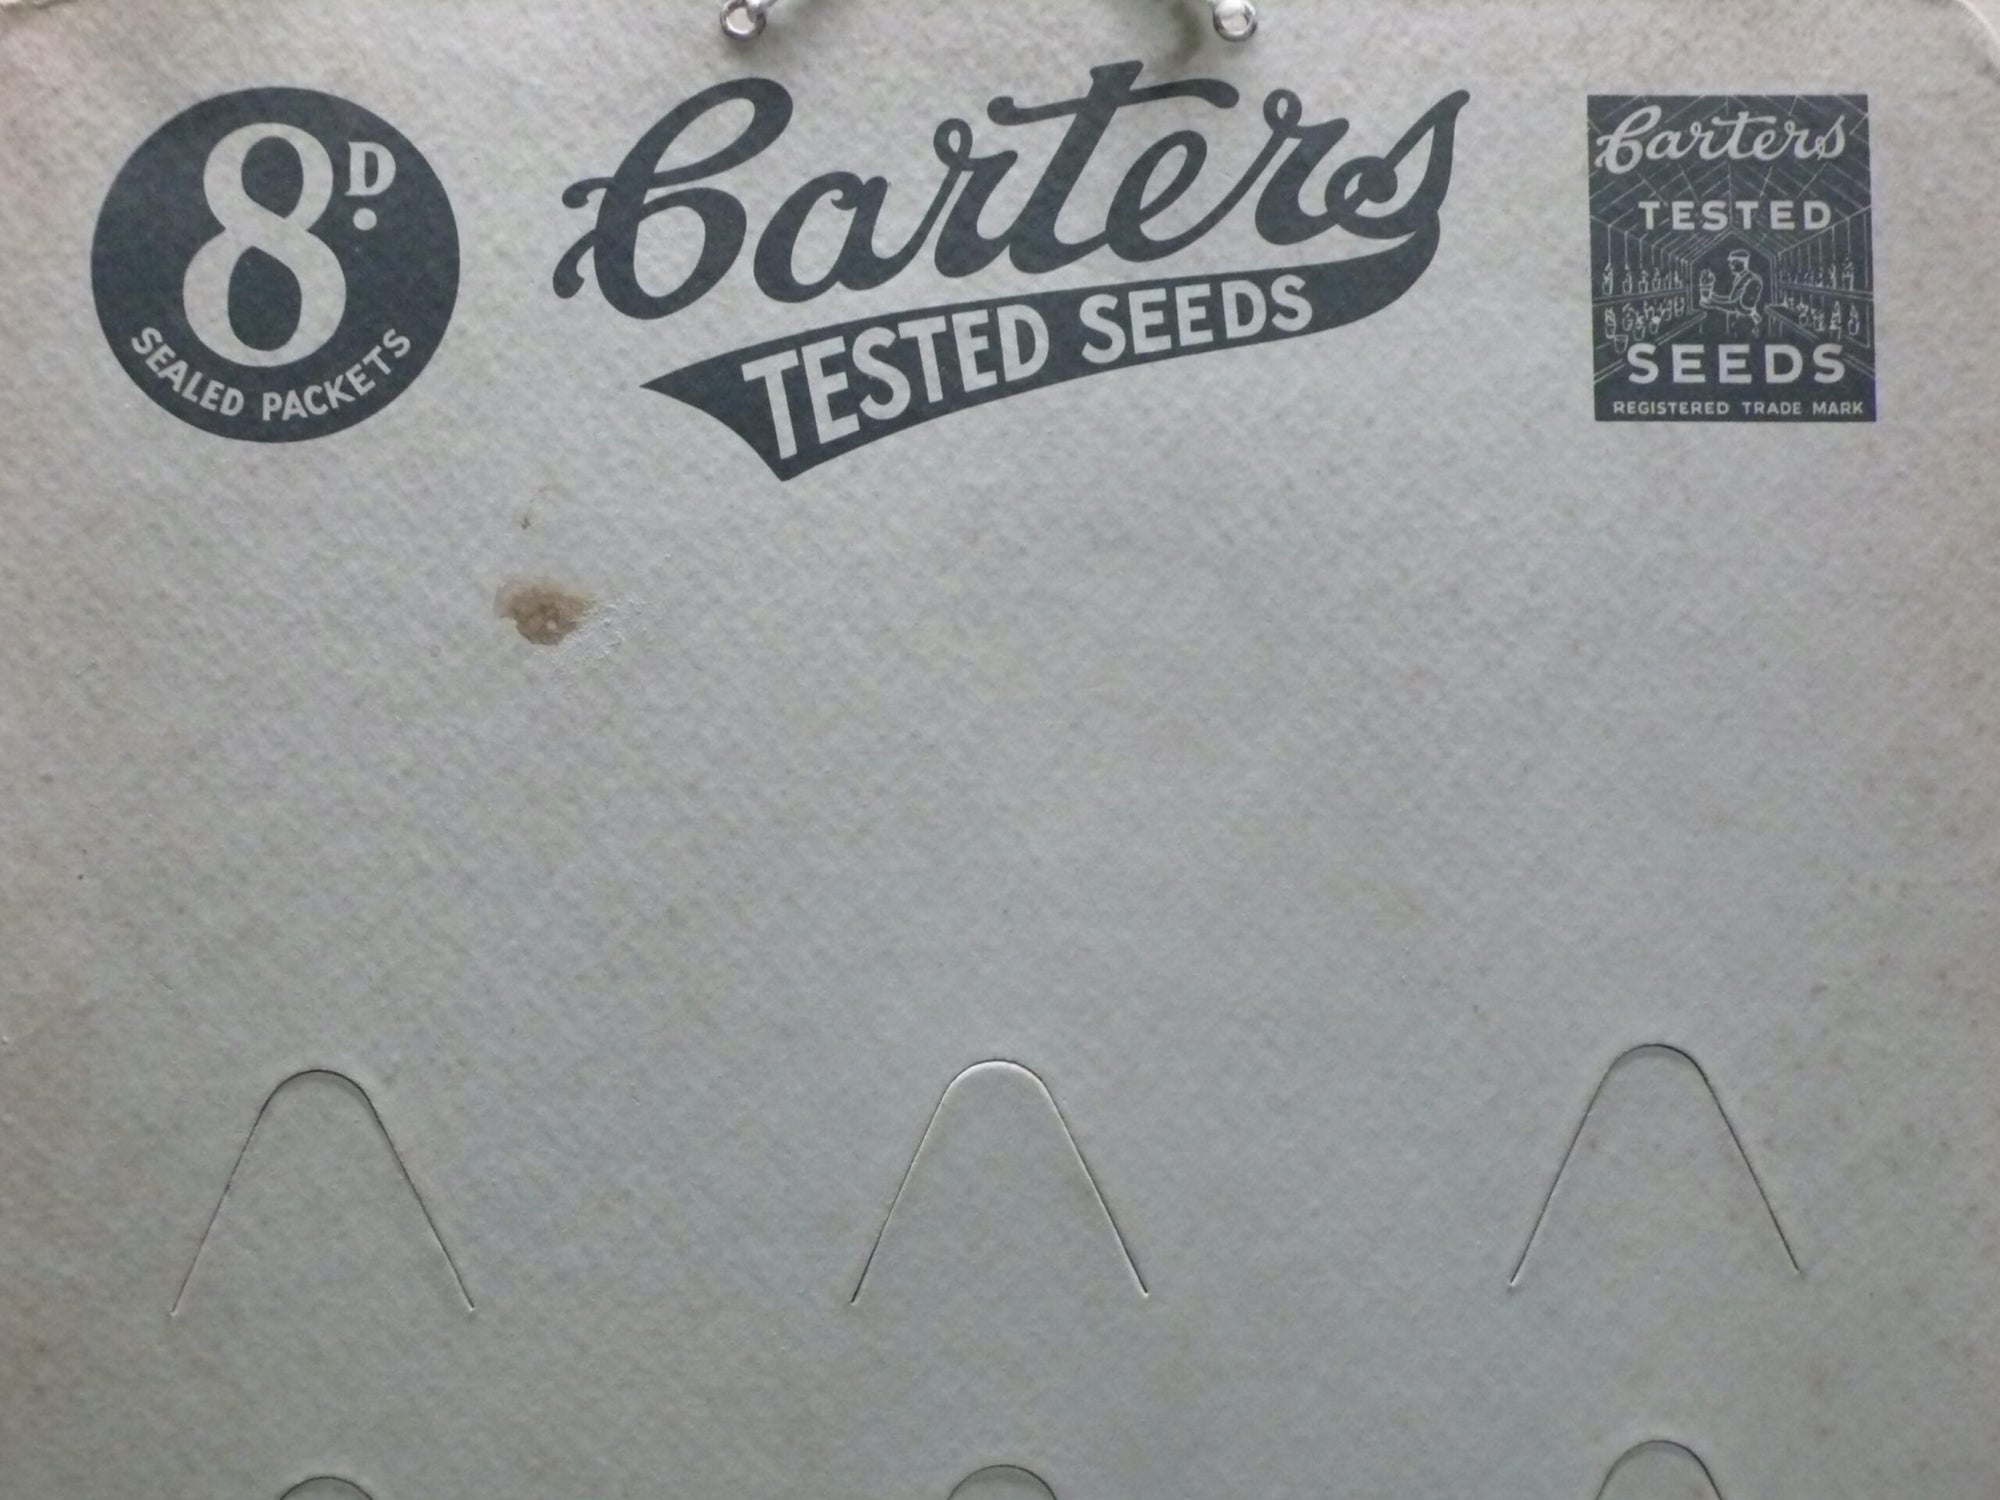 Carters Seeds Shop Display Card